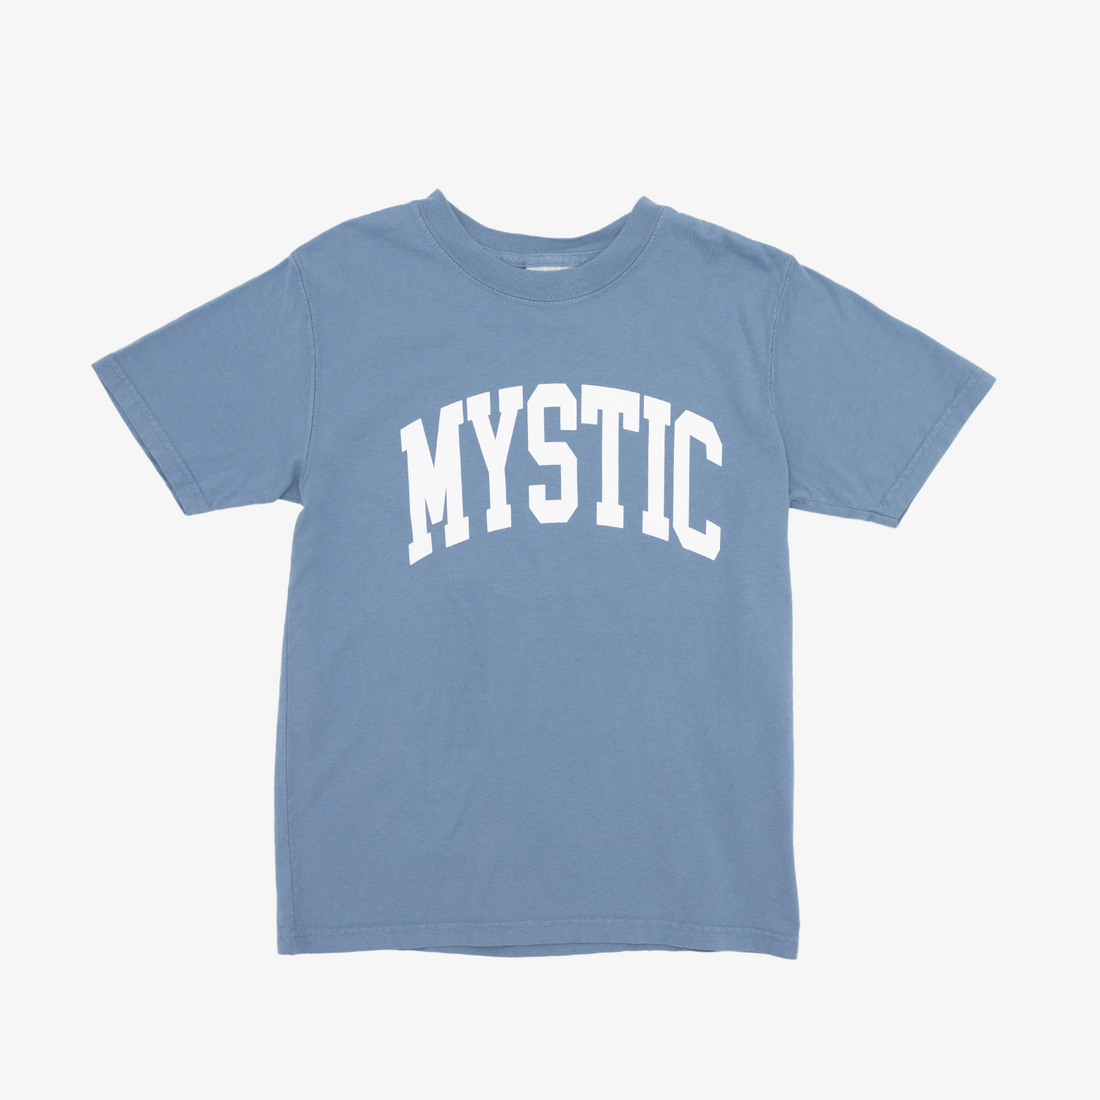 Mystic Kids Tee in Saltwater Blue